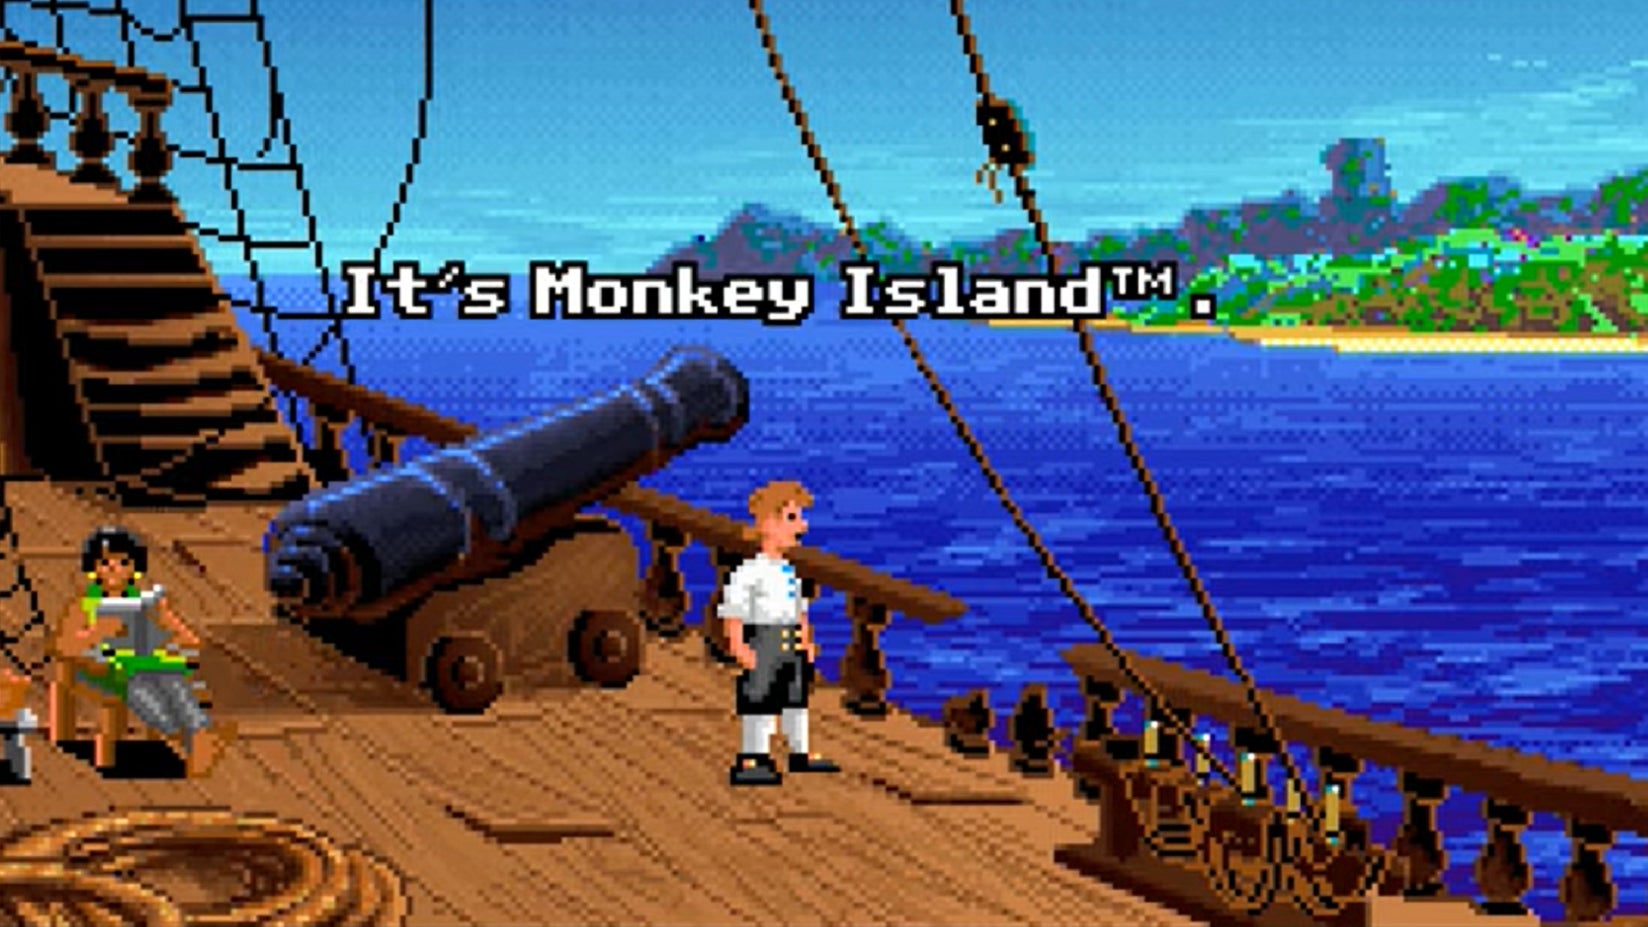 Bilder zu Monkey Island 1: The Secret of Monkey Island - Komplettlösung mit allen Beleidigungen und Tipps